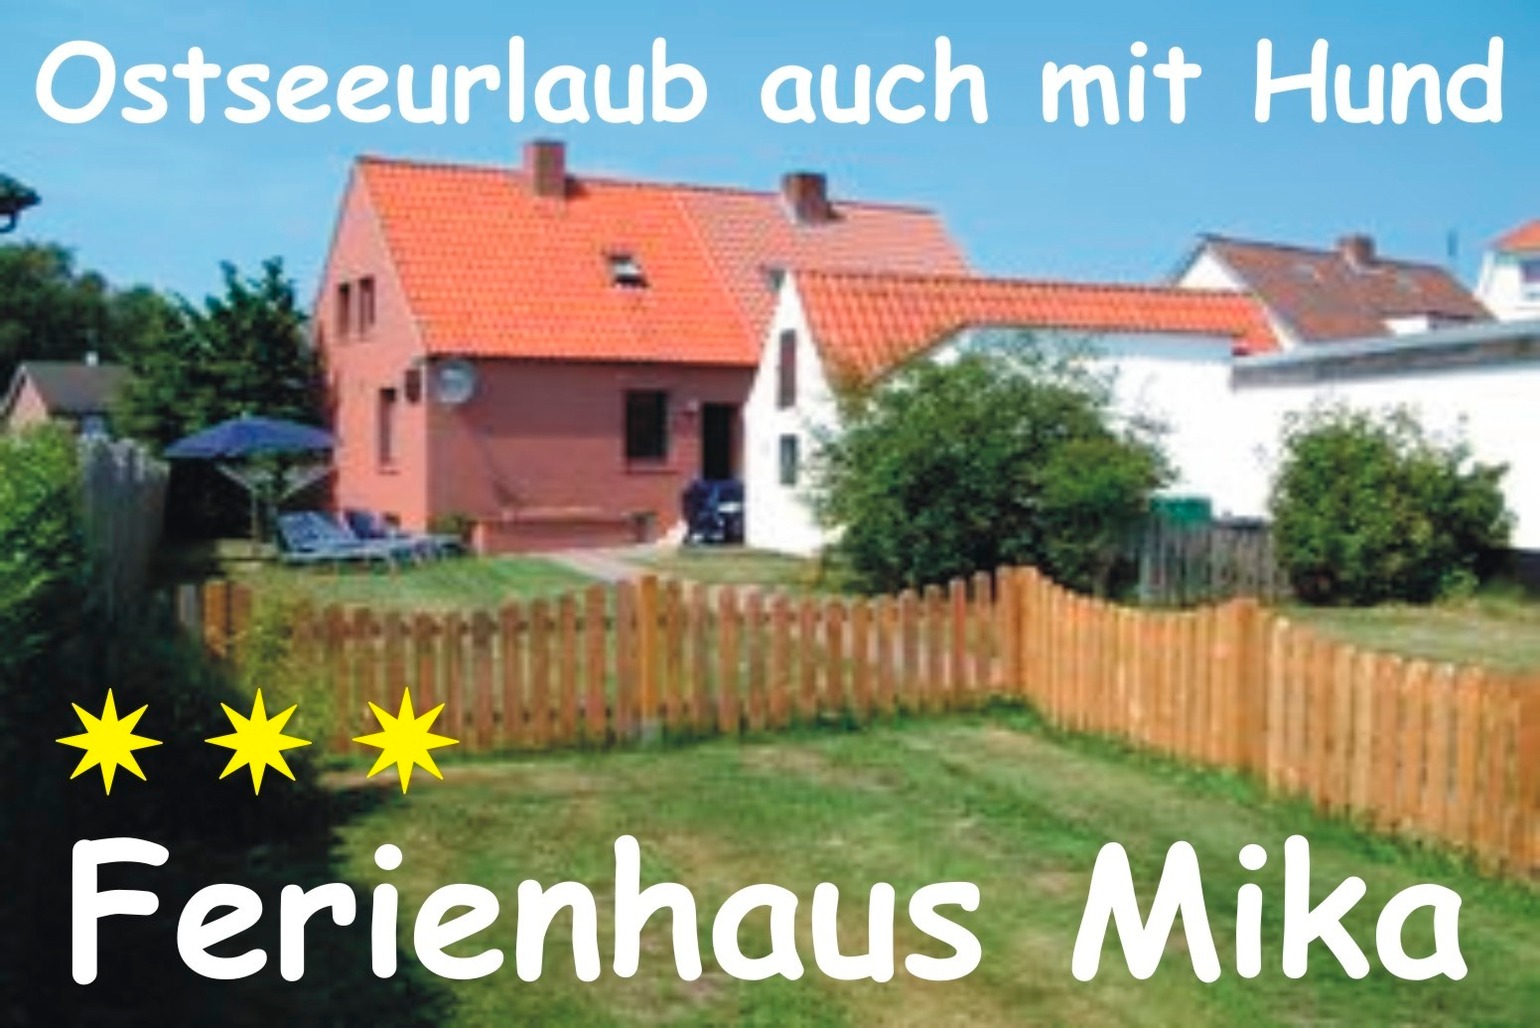 Ferienhaus Mika - Urlaub auch mit Hund Ferienhaus in Schleswig Holstein